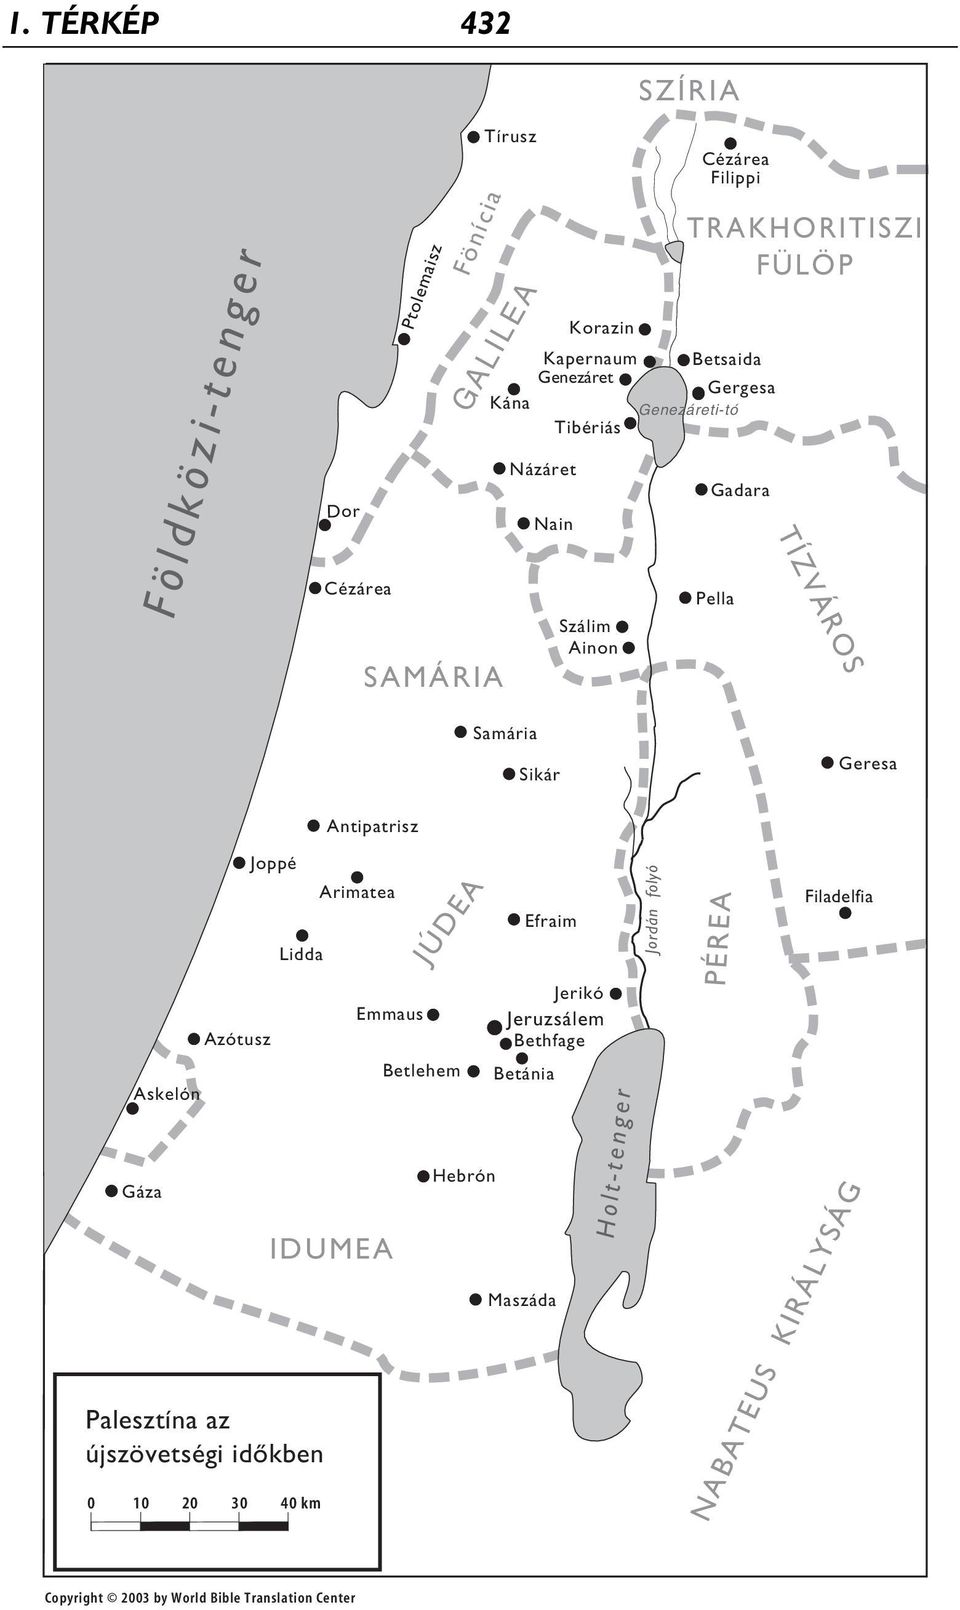 Antipatrisz Askelón Gáza Azótusz Joppé Lidda Palesztína az újszövetségi időkben 0 10 20 30 40 km Arimatea Emmaus IDUMEA Betlehem JÚDEA Hebrón